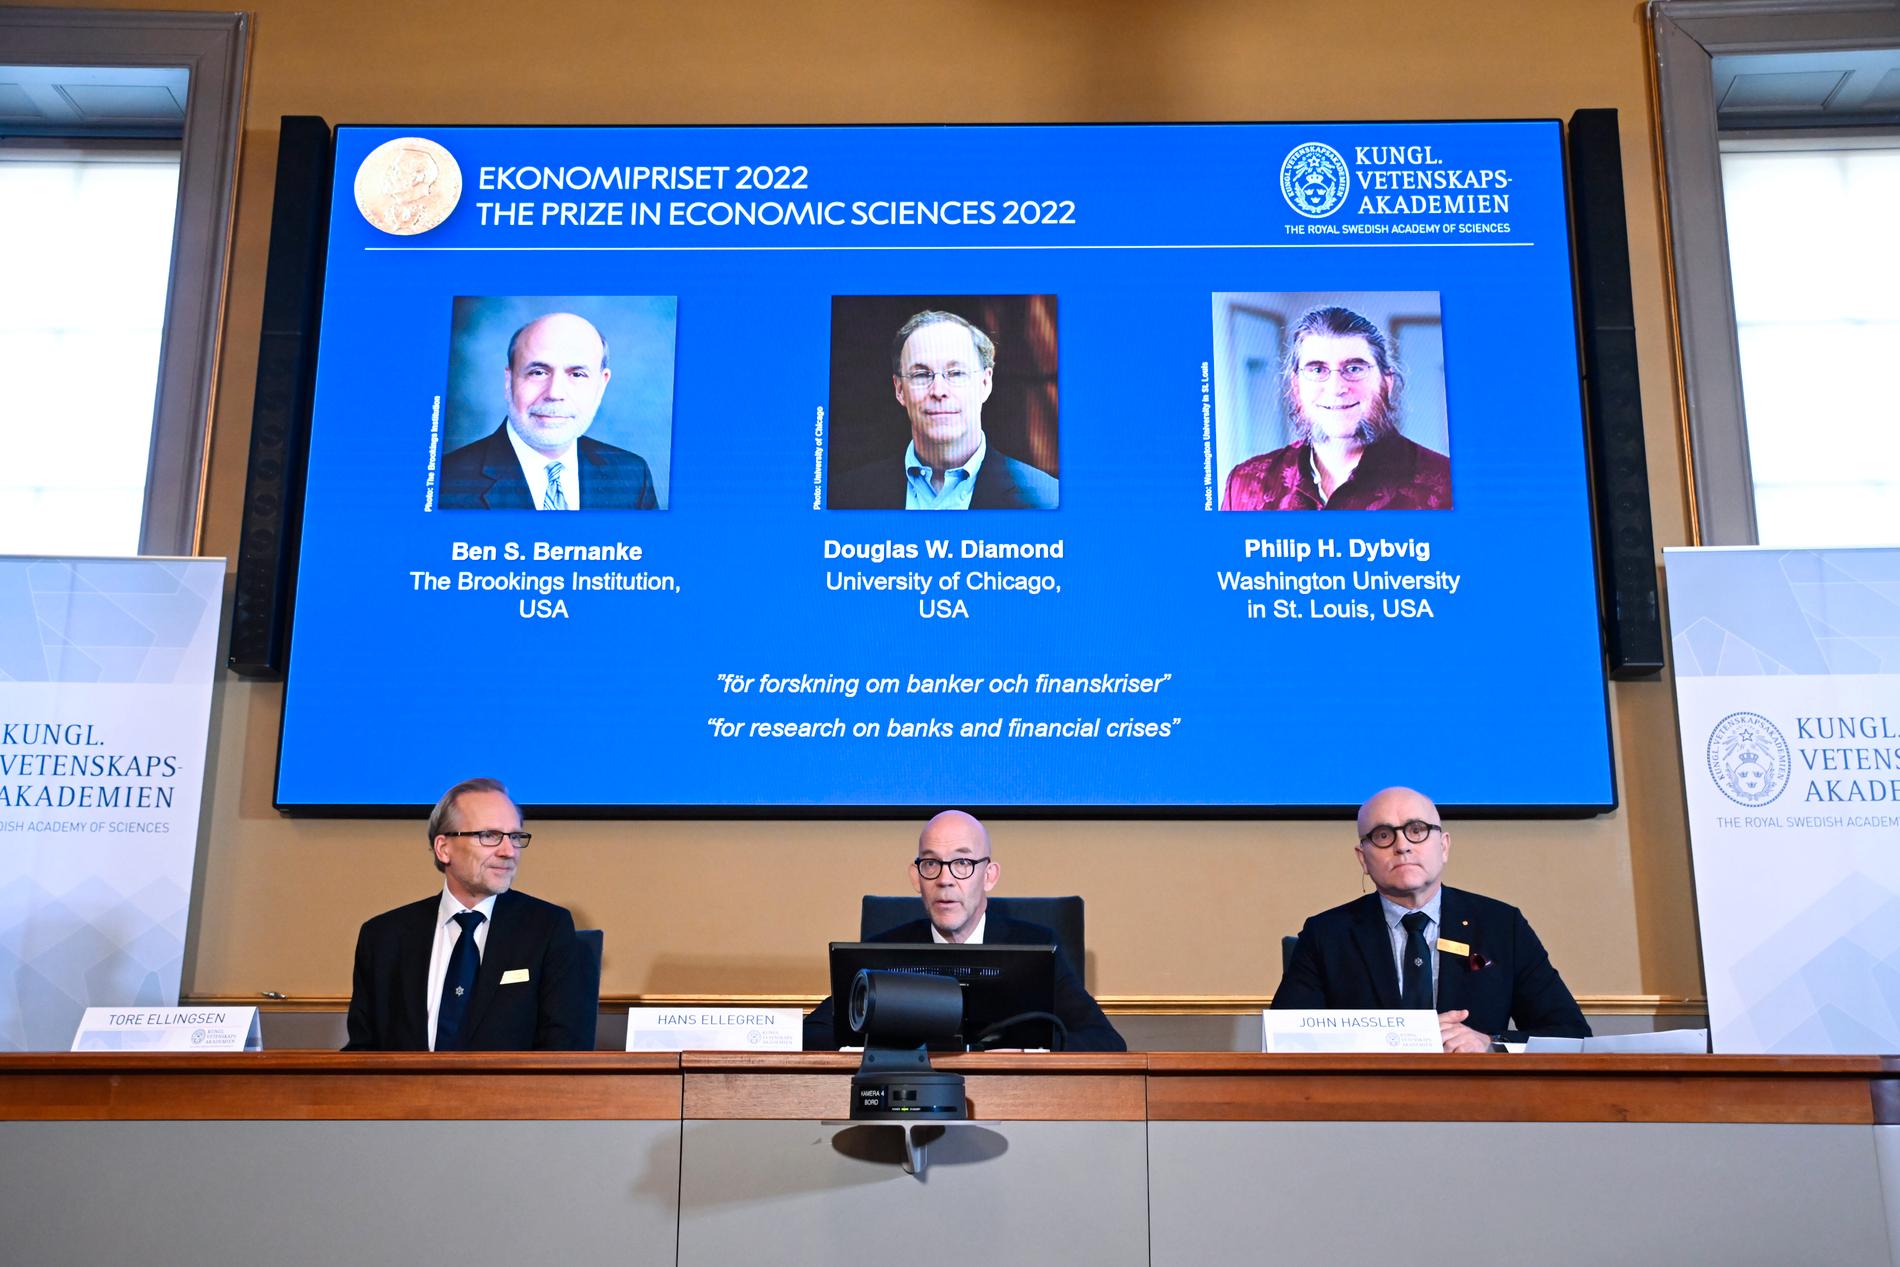 Tore Ellingsen, Hans Ellegren och John Hassler presenterar årets Nobelpris i ekonomi under en pressträff på Kungliga Vetenskapsakademien i Stockholm på måndagen.